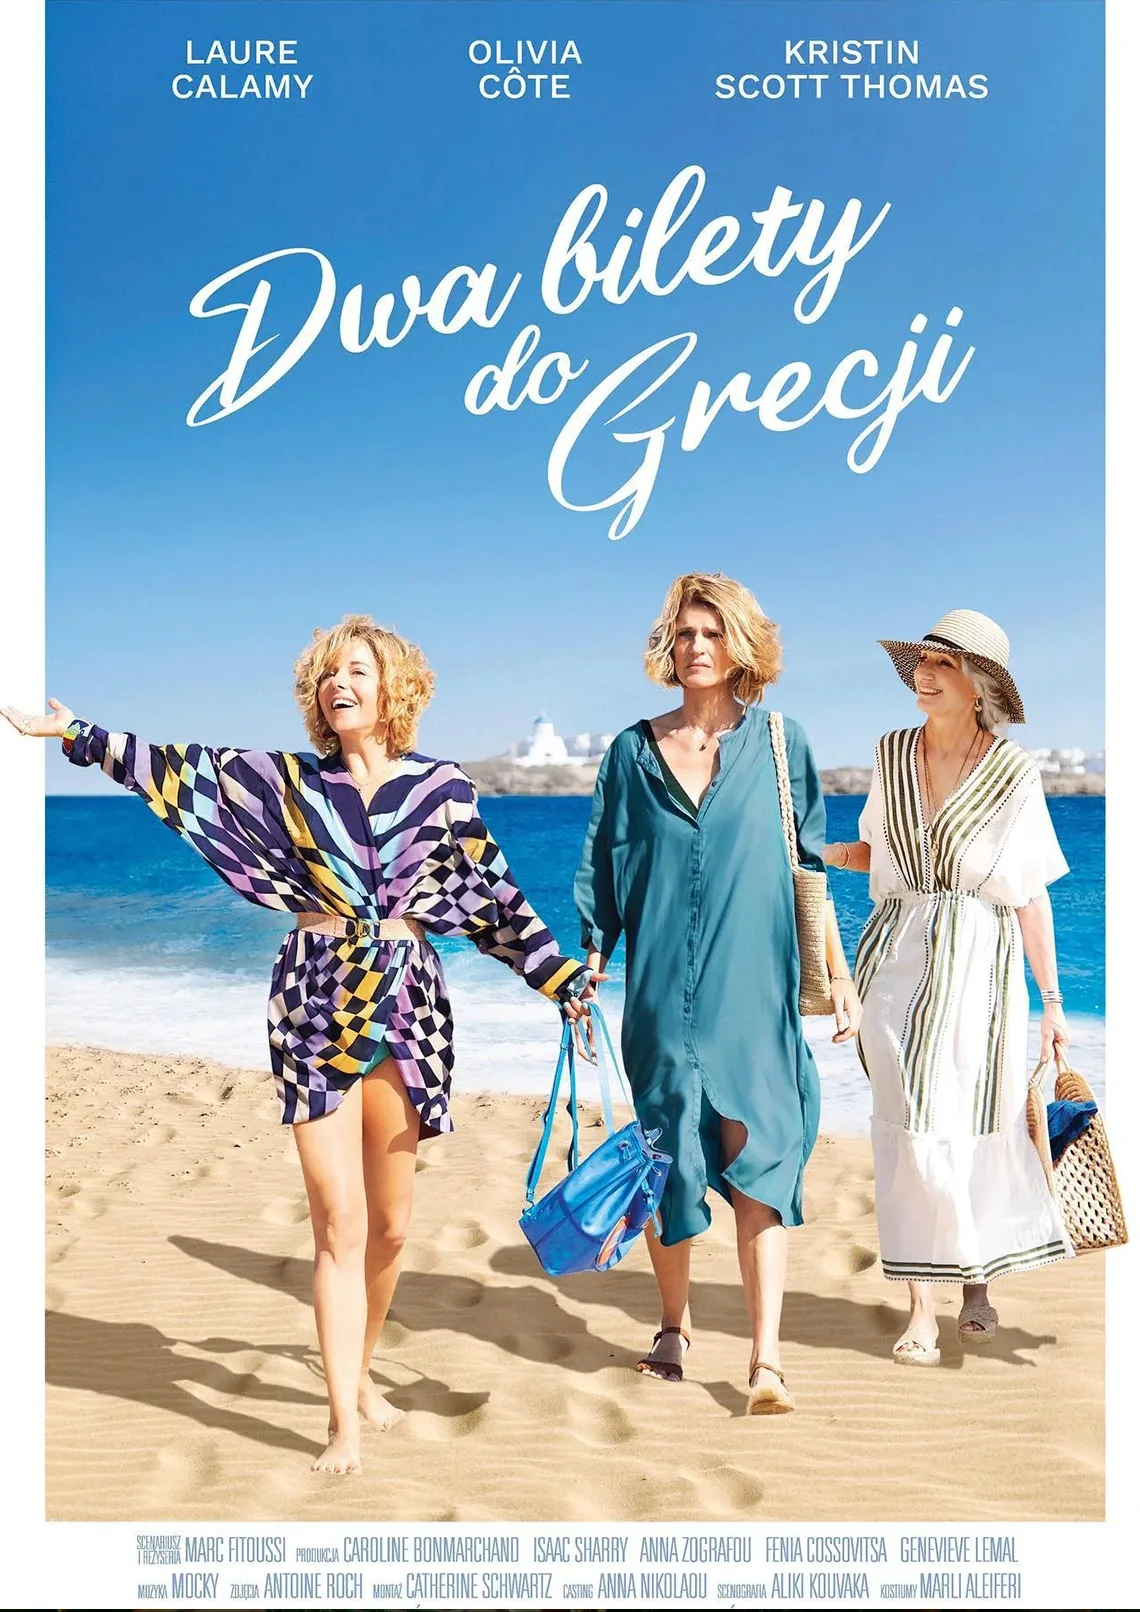 3 uśmeichnięte kobiety idą po piasku, w tle morze, napis: Dwa bikety do Grecji